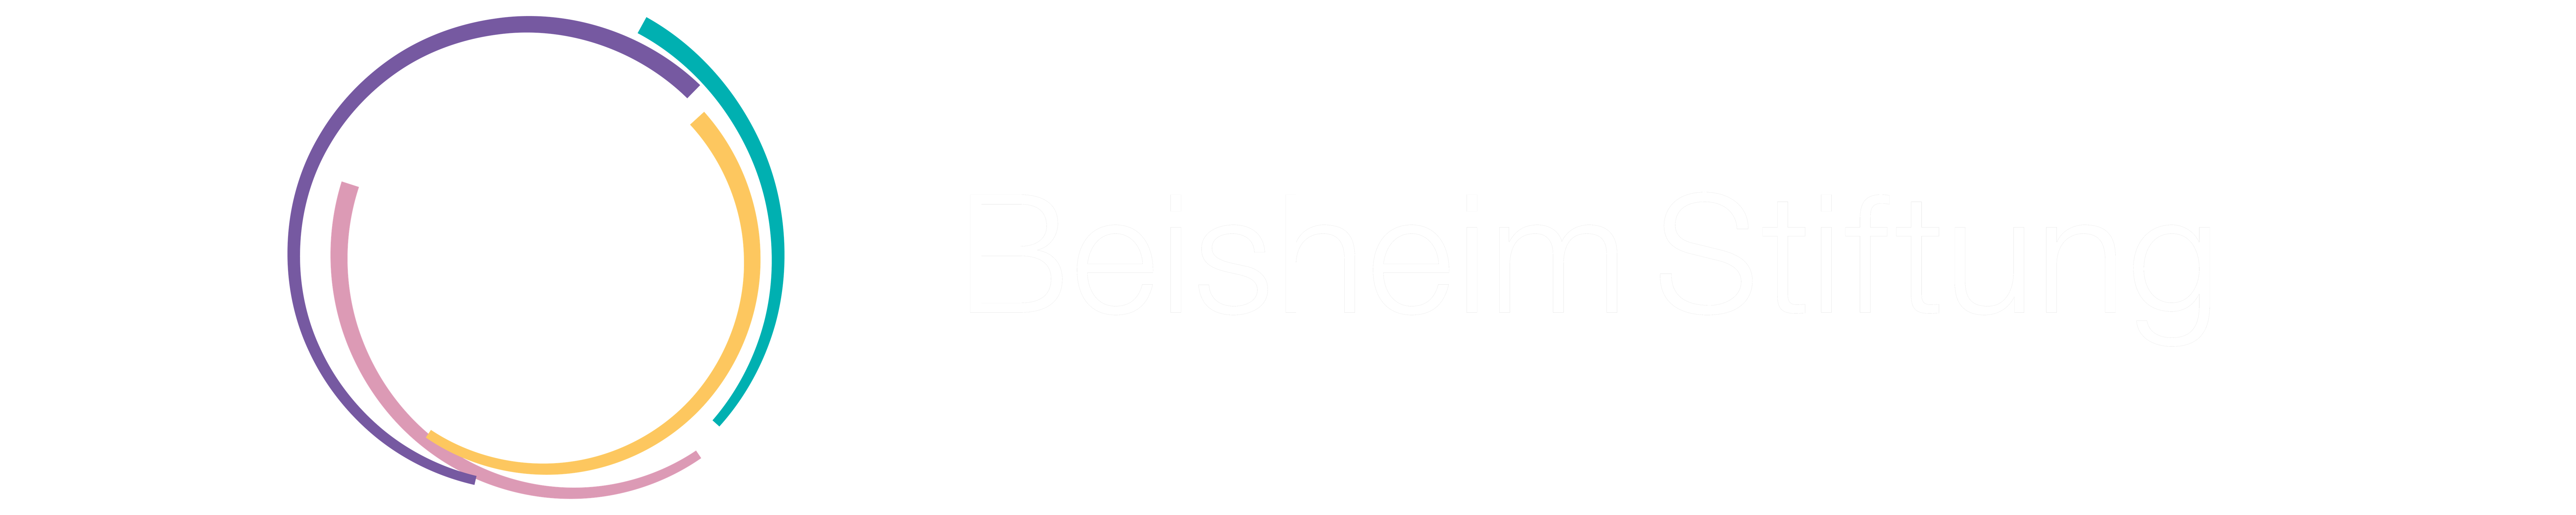 Beisheim Stiftung Logo